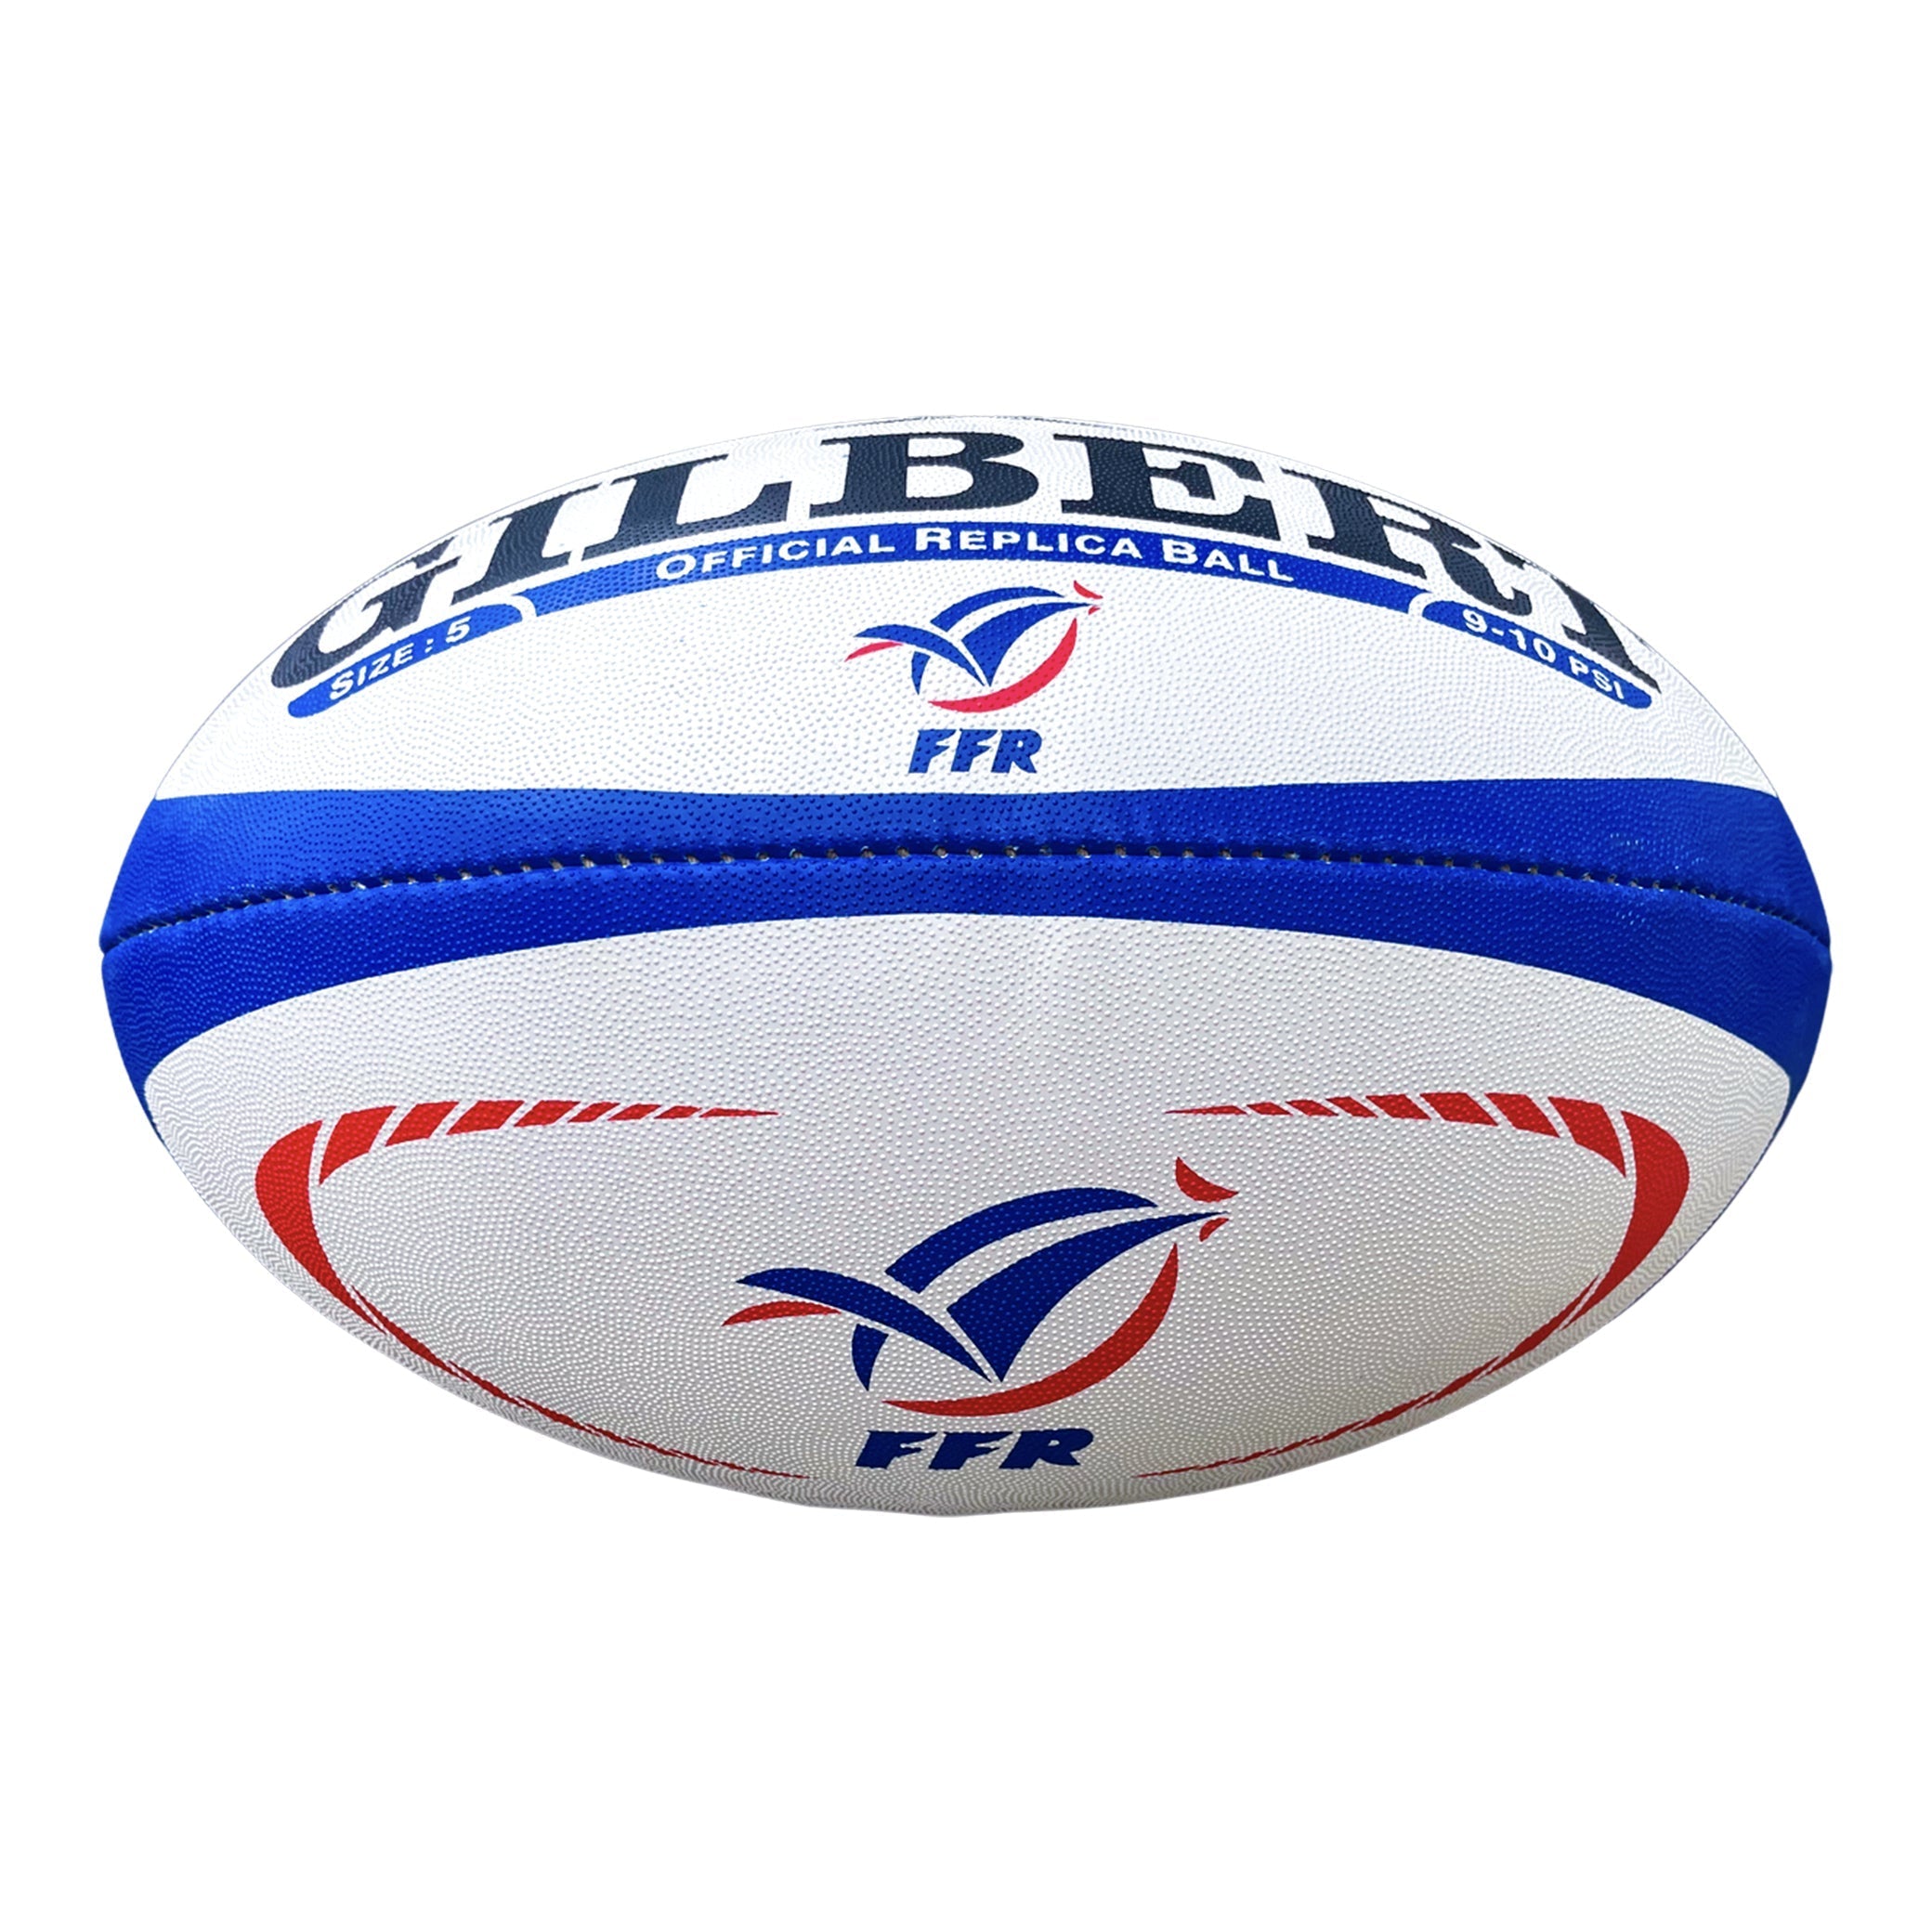 Ballons de Rugby Gilbert France